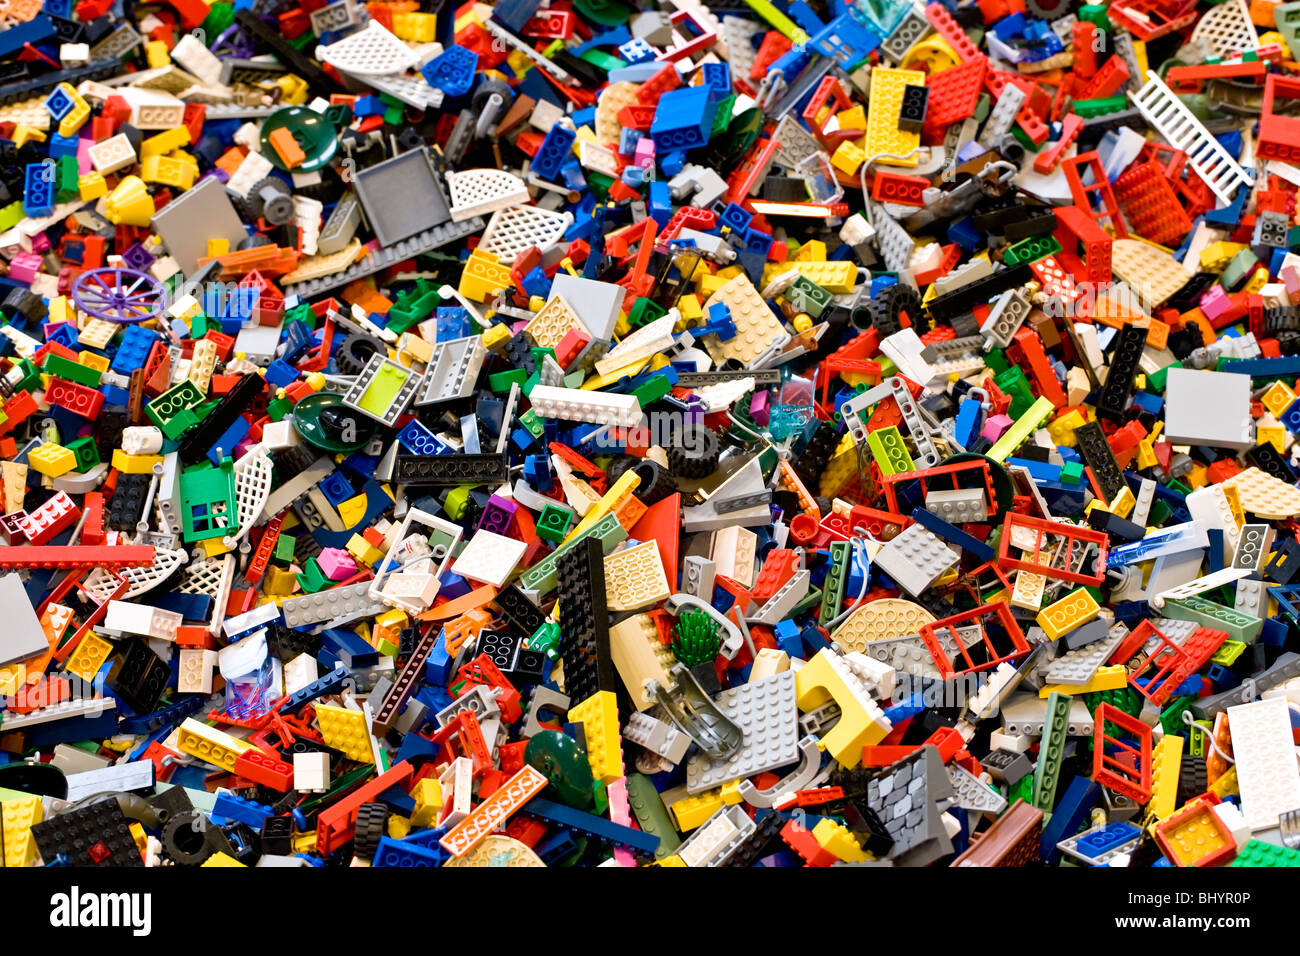 Heap of Lego bricks Stock Photo